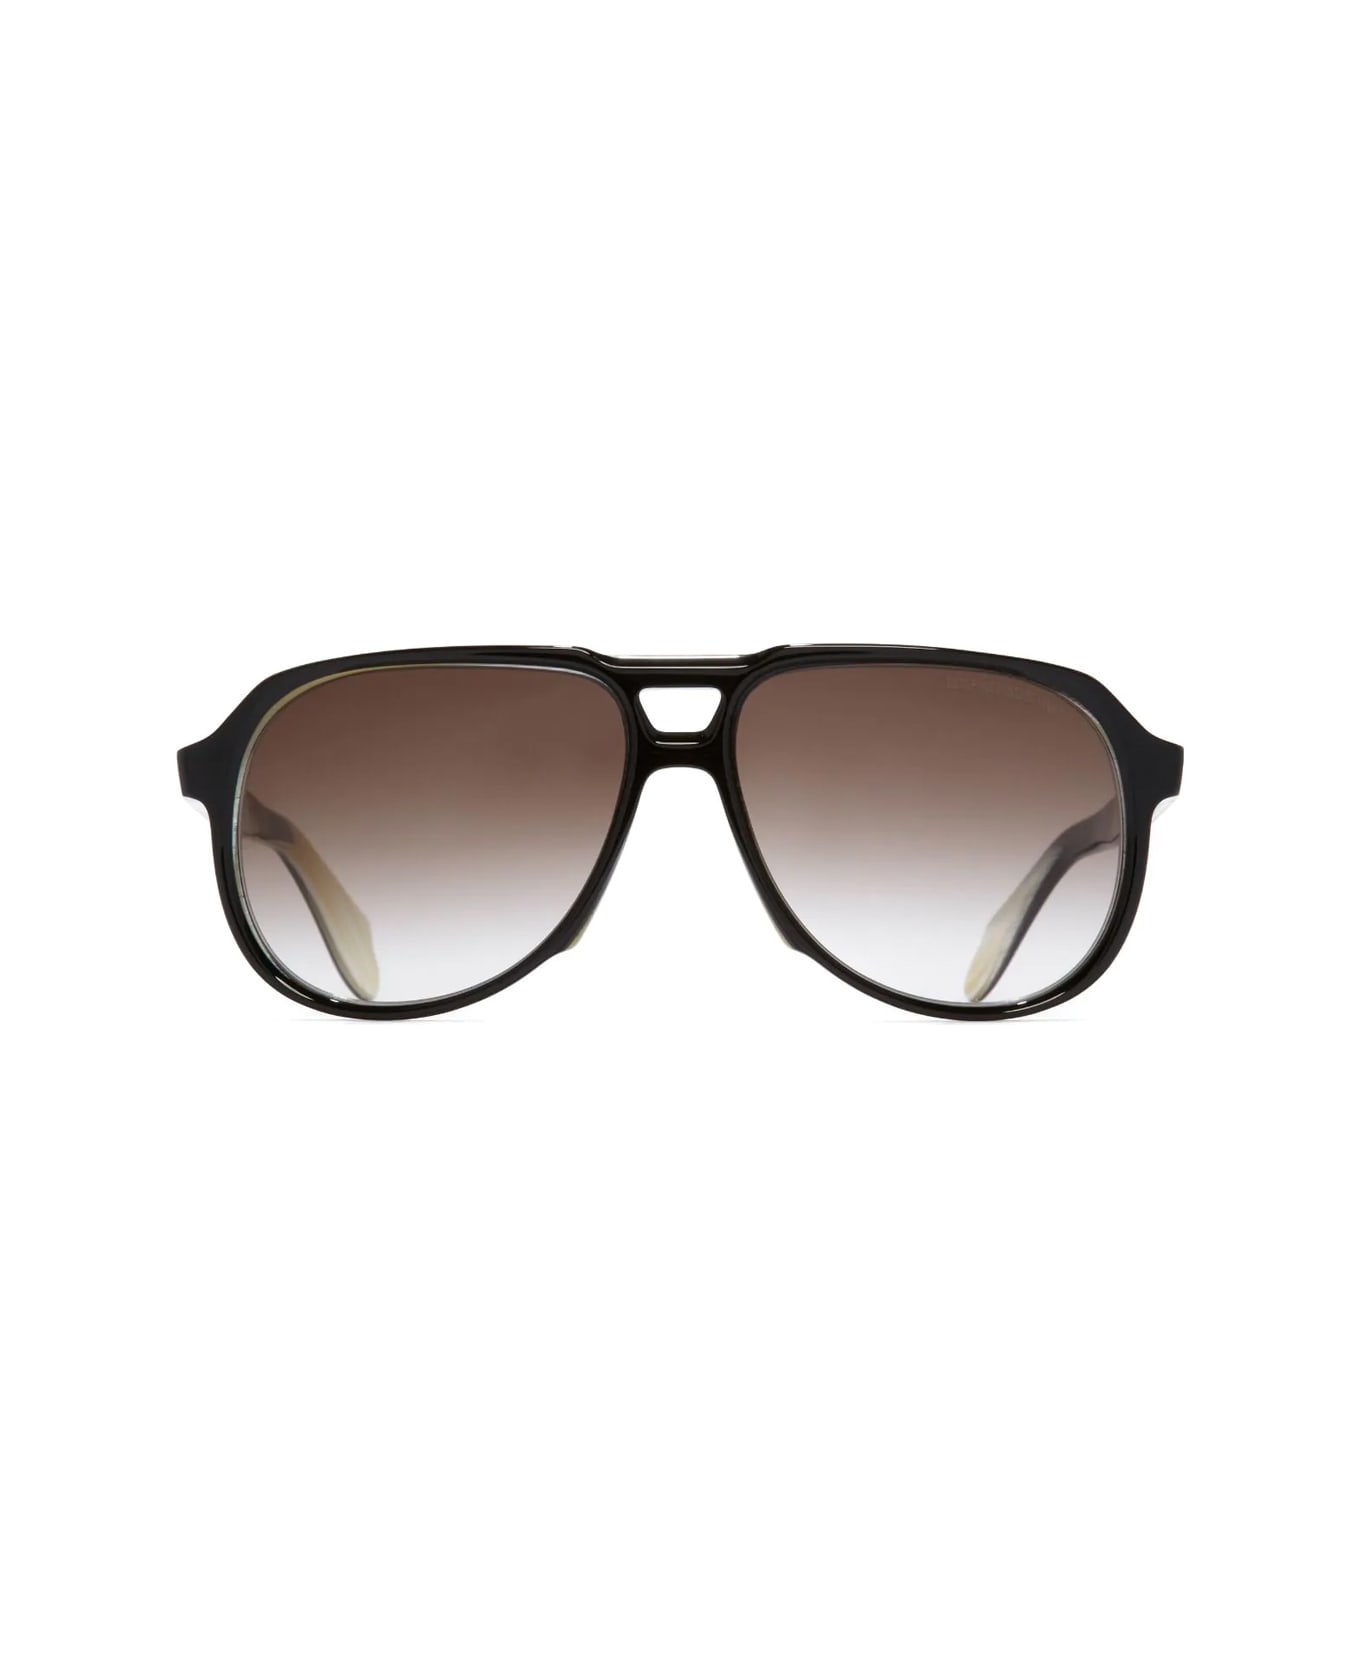 Cutler and Gross 9782 02 Sunglasses - Nero サングラス